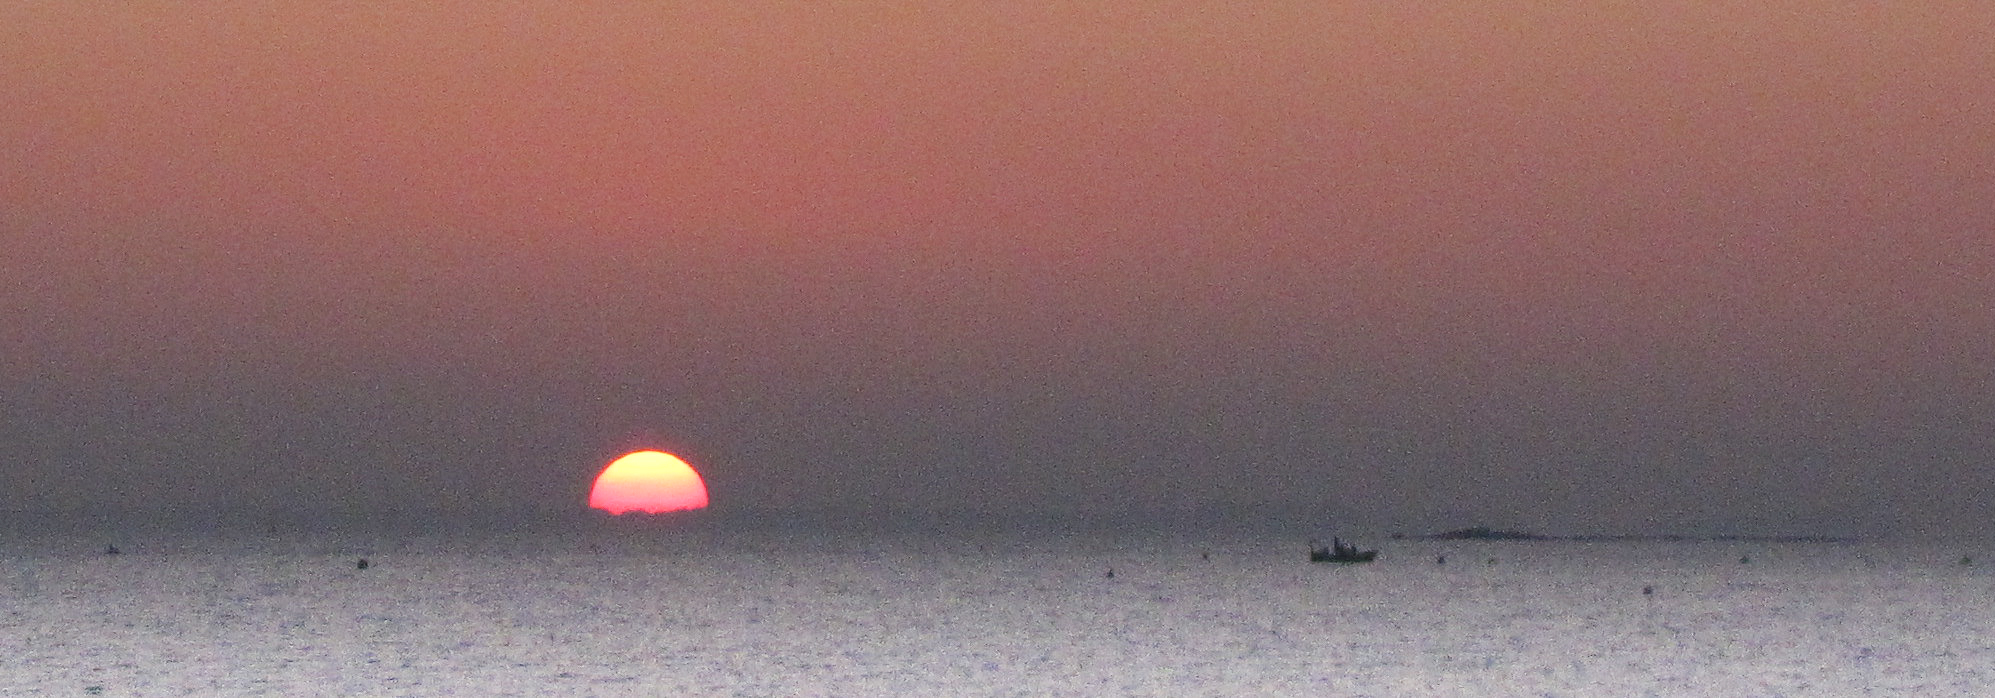 pêcheurs du soir, baie de quiberon, 18h34, 16 févr 10 (1 sur 1)